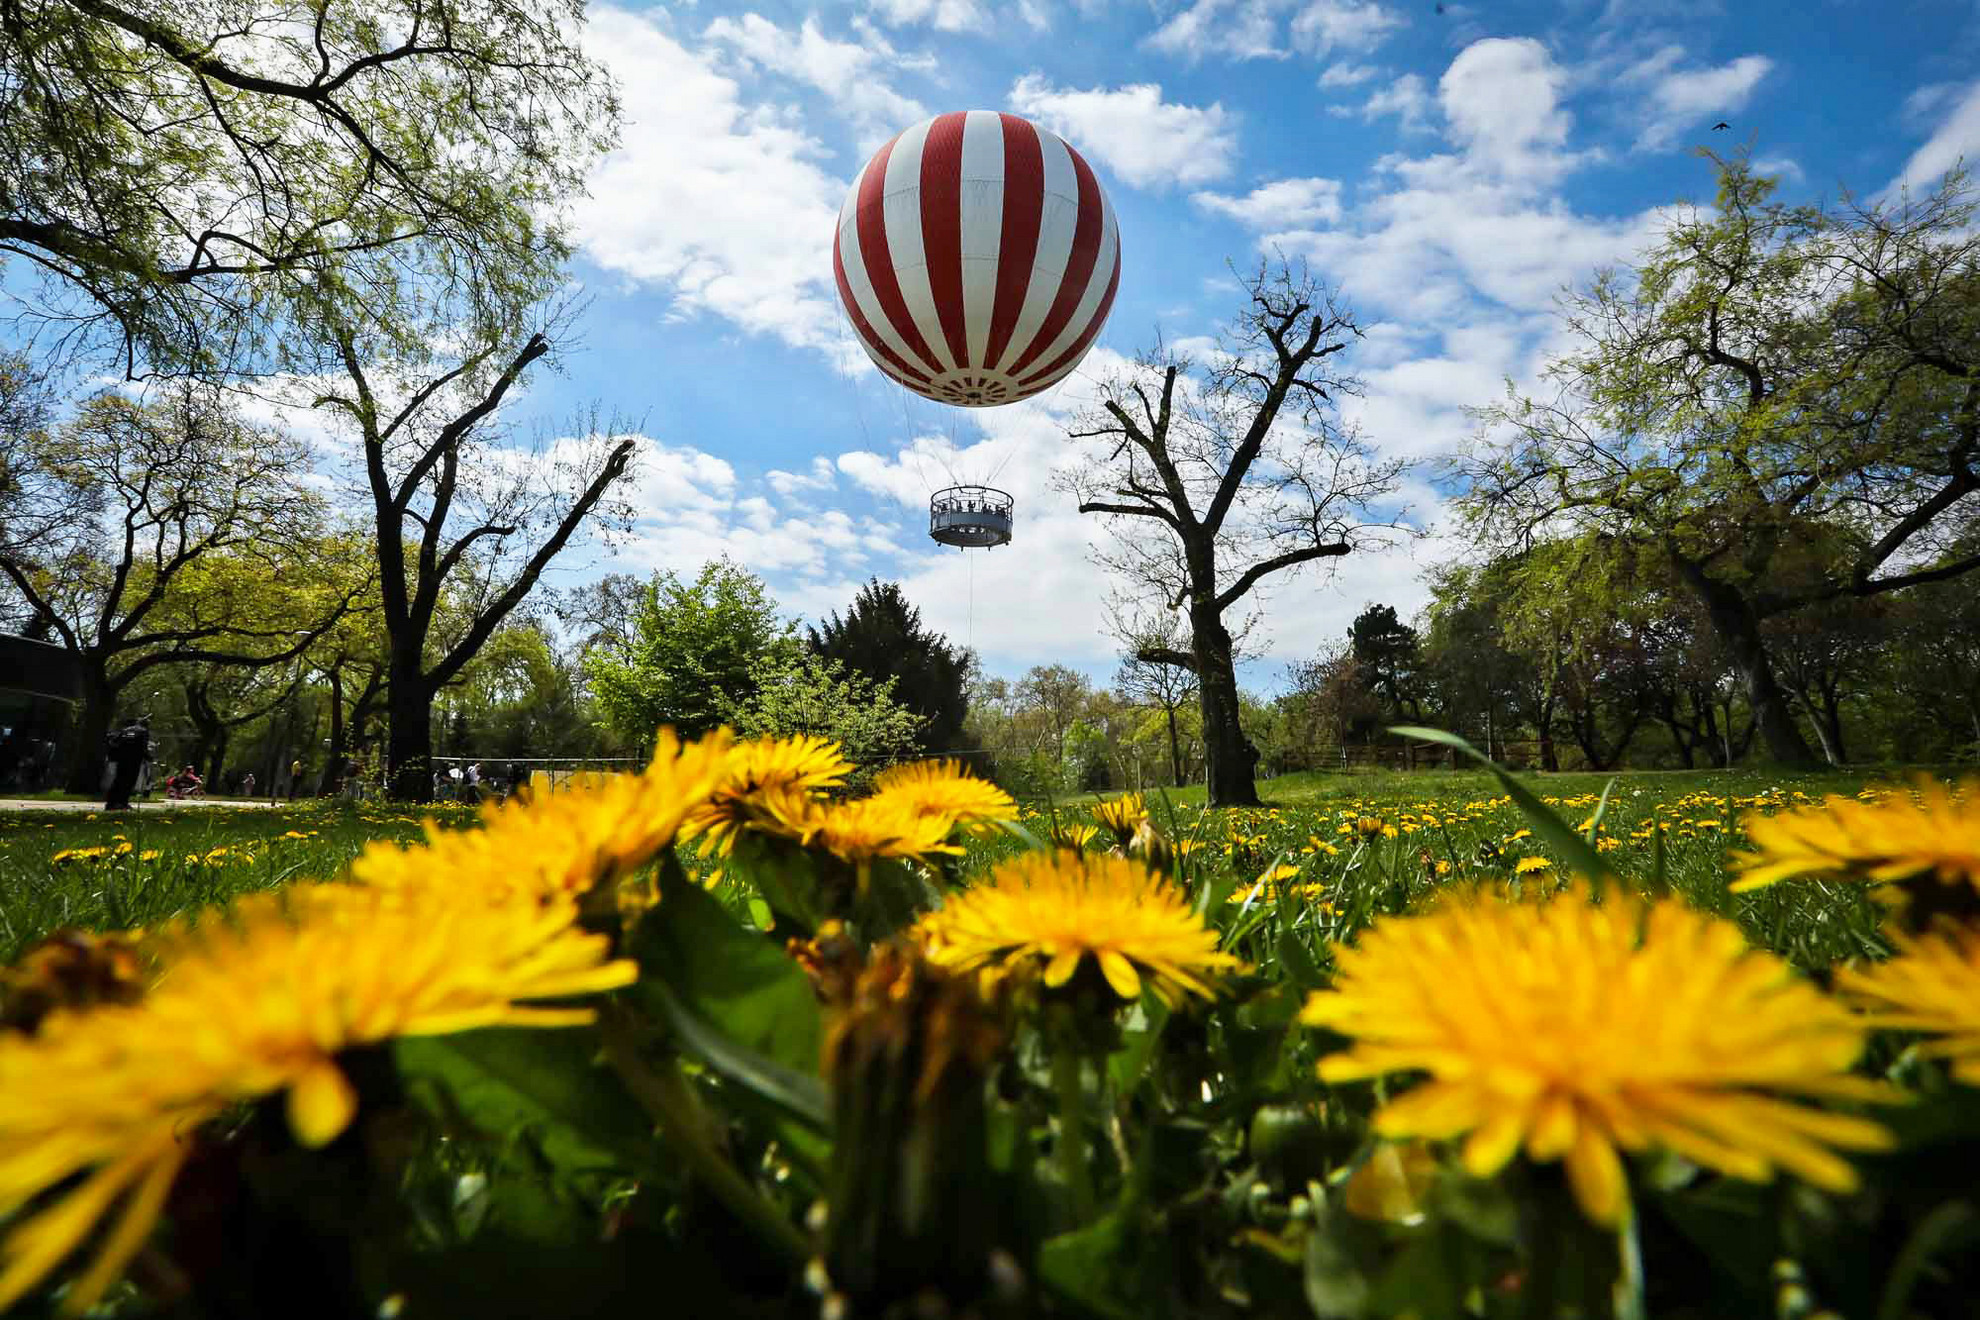 A Ballon kilátó a járványhelyzet után újrainduló budapesti és magyarországi turizmus szimbóluma